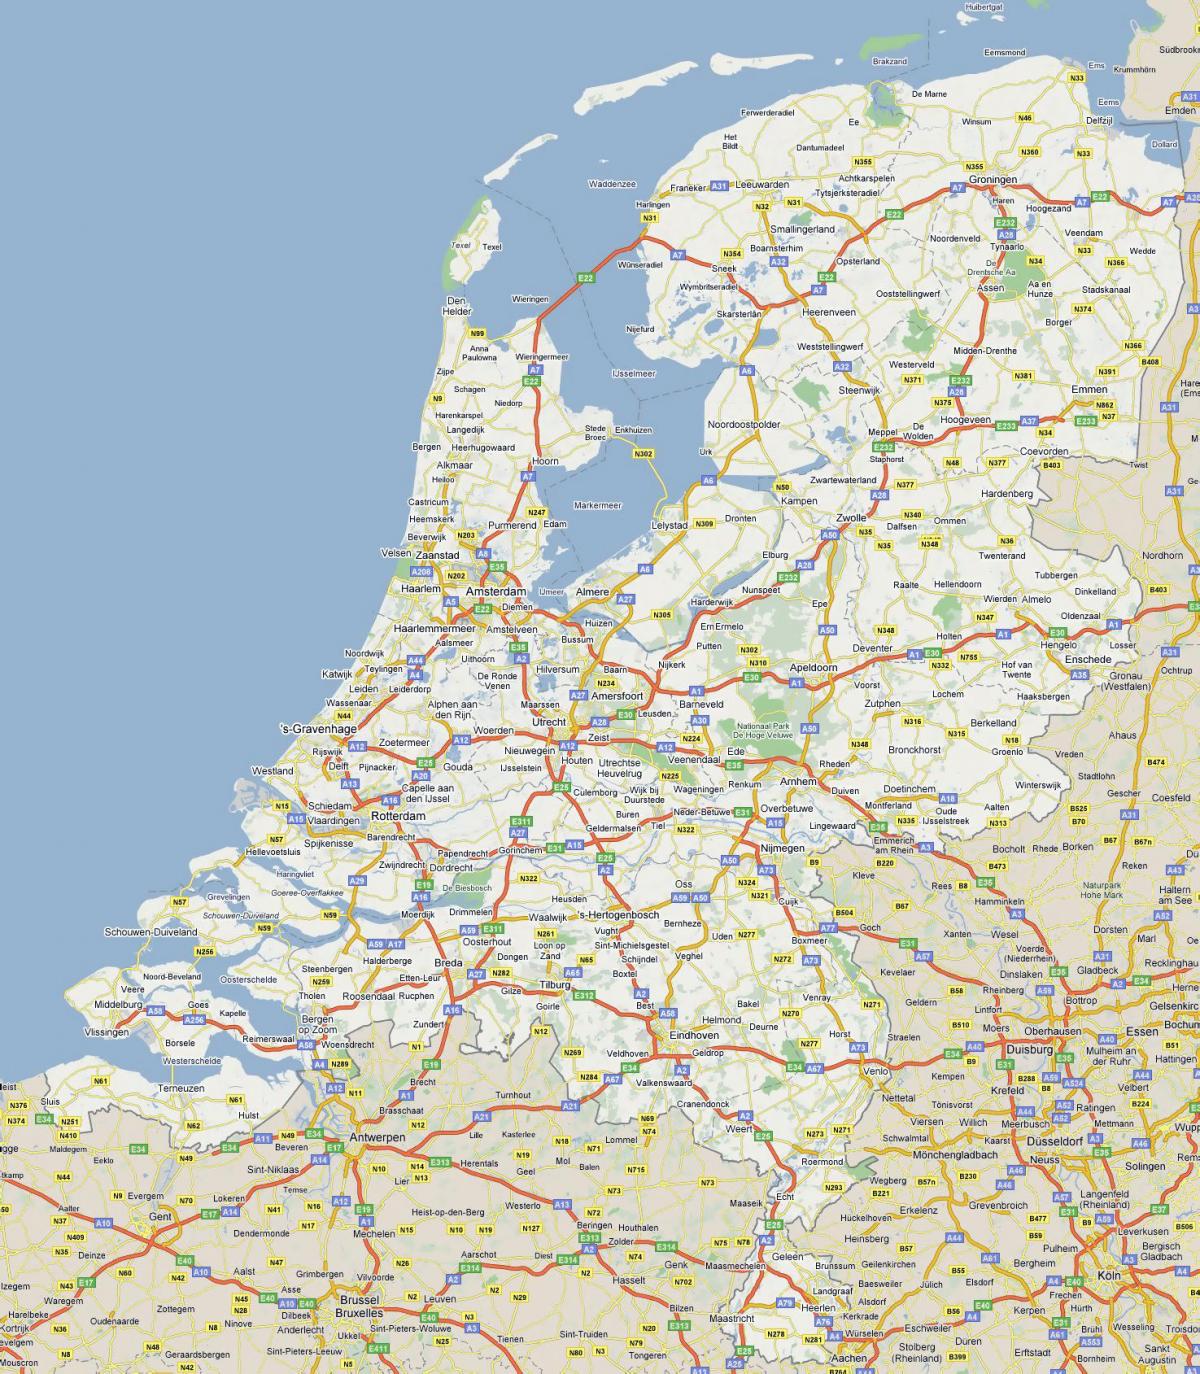 Autobahnkarte der Niederlande